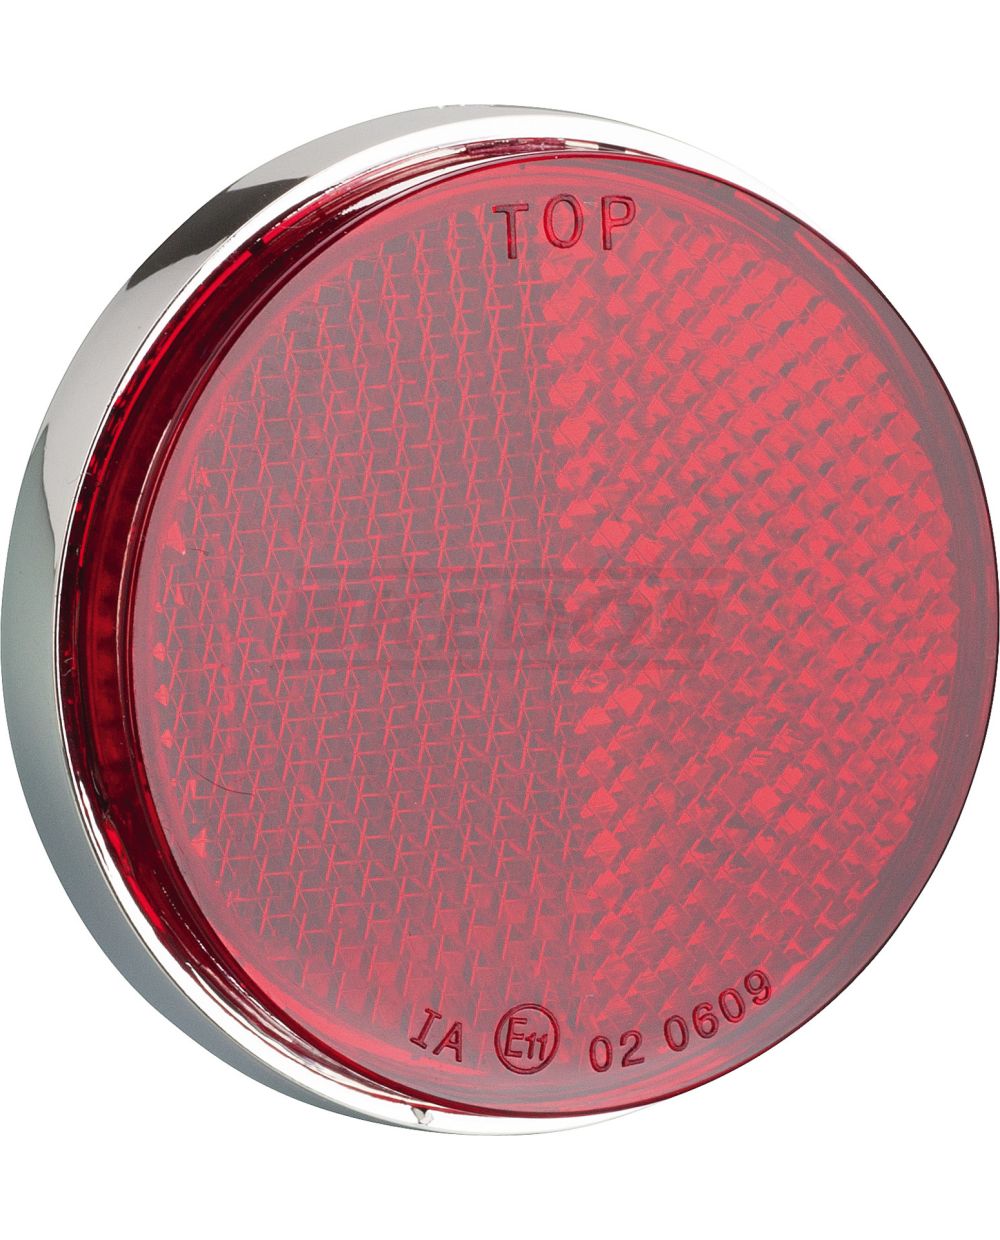 Reflektor rund/rot, verchromtes Gehäuse, Durchmesser 55/59mm, 1